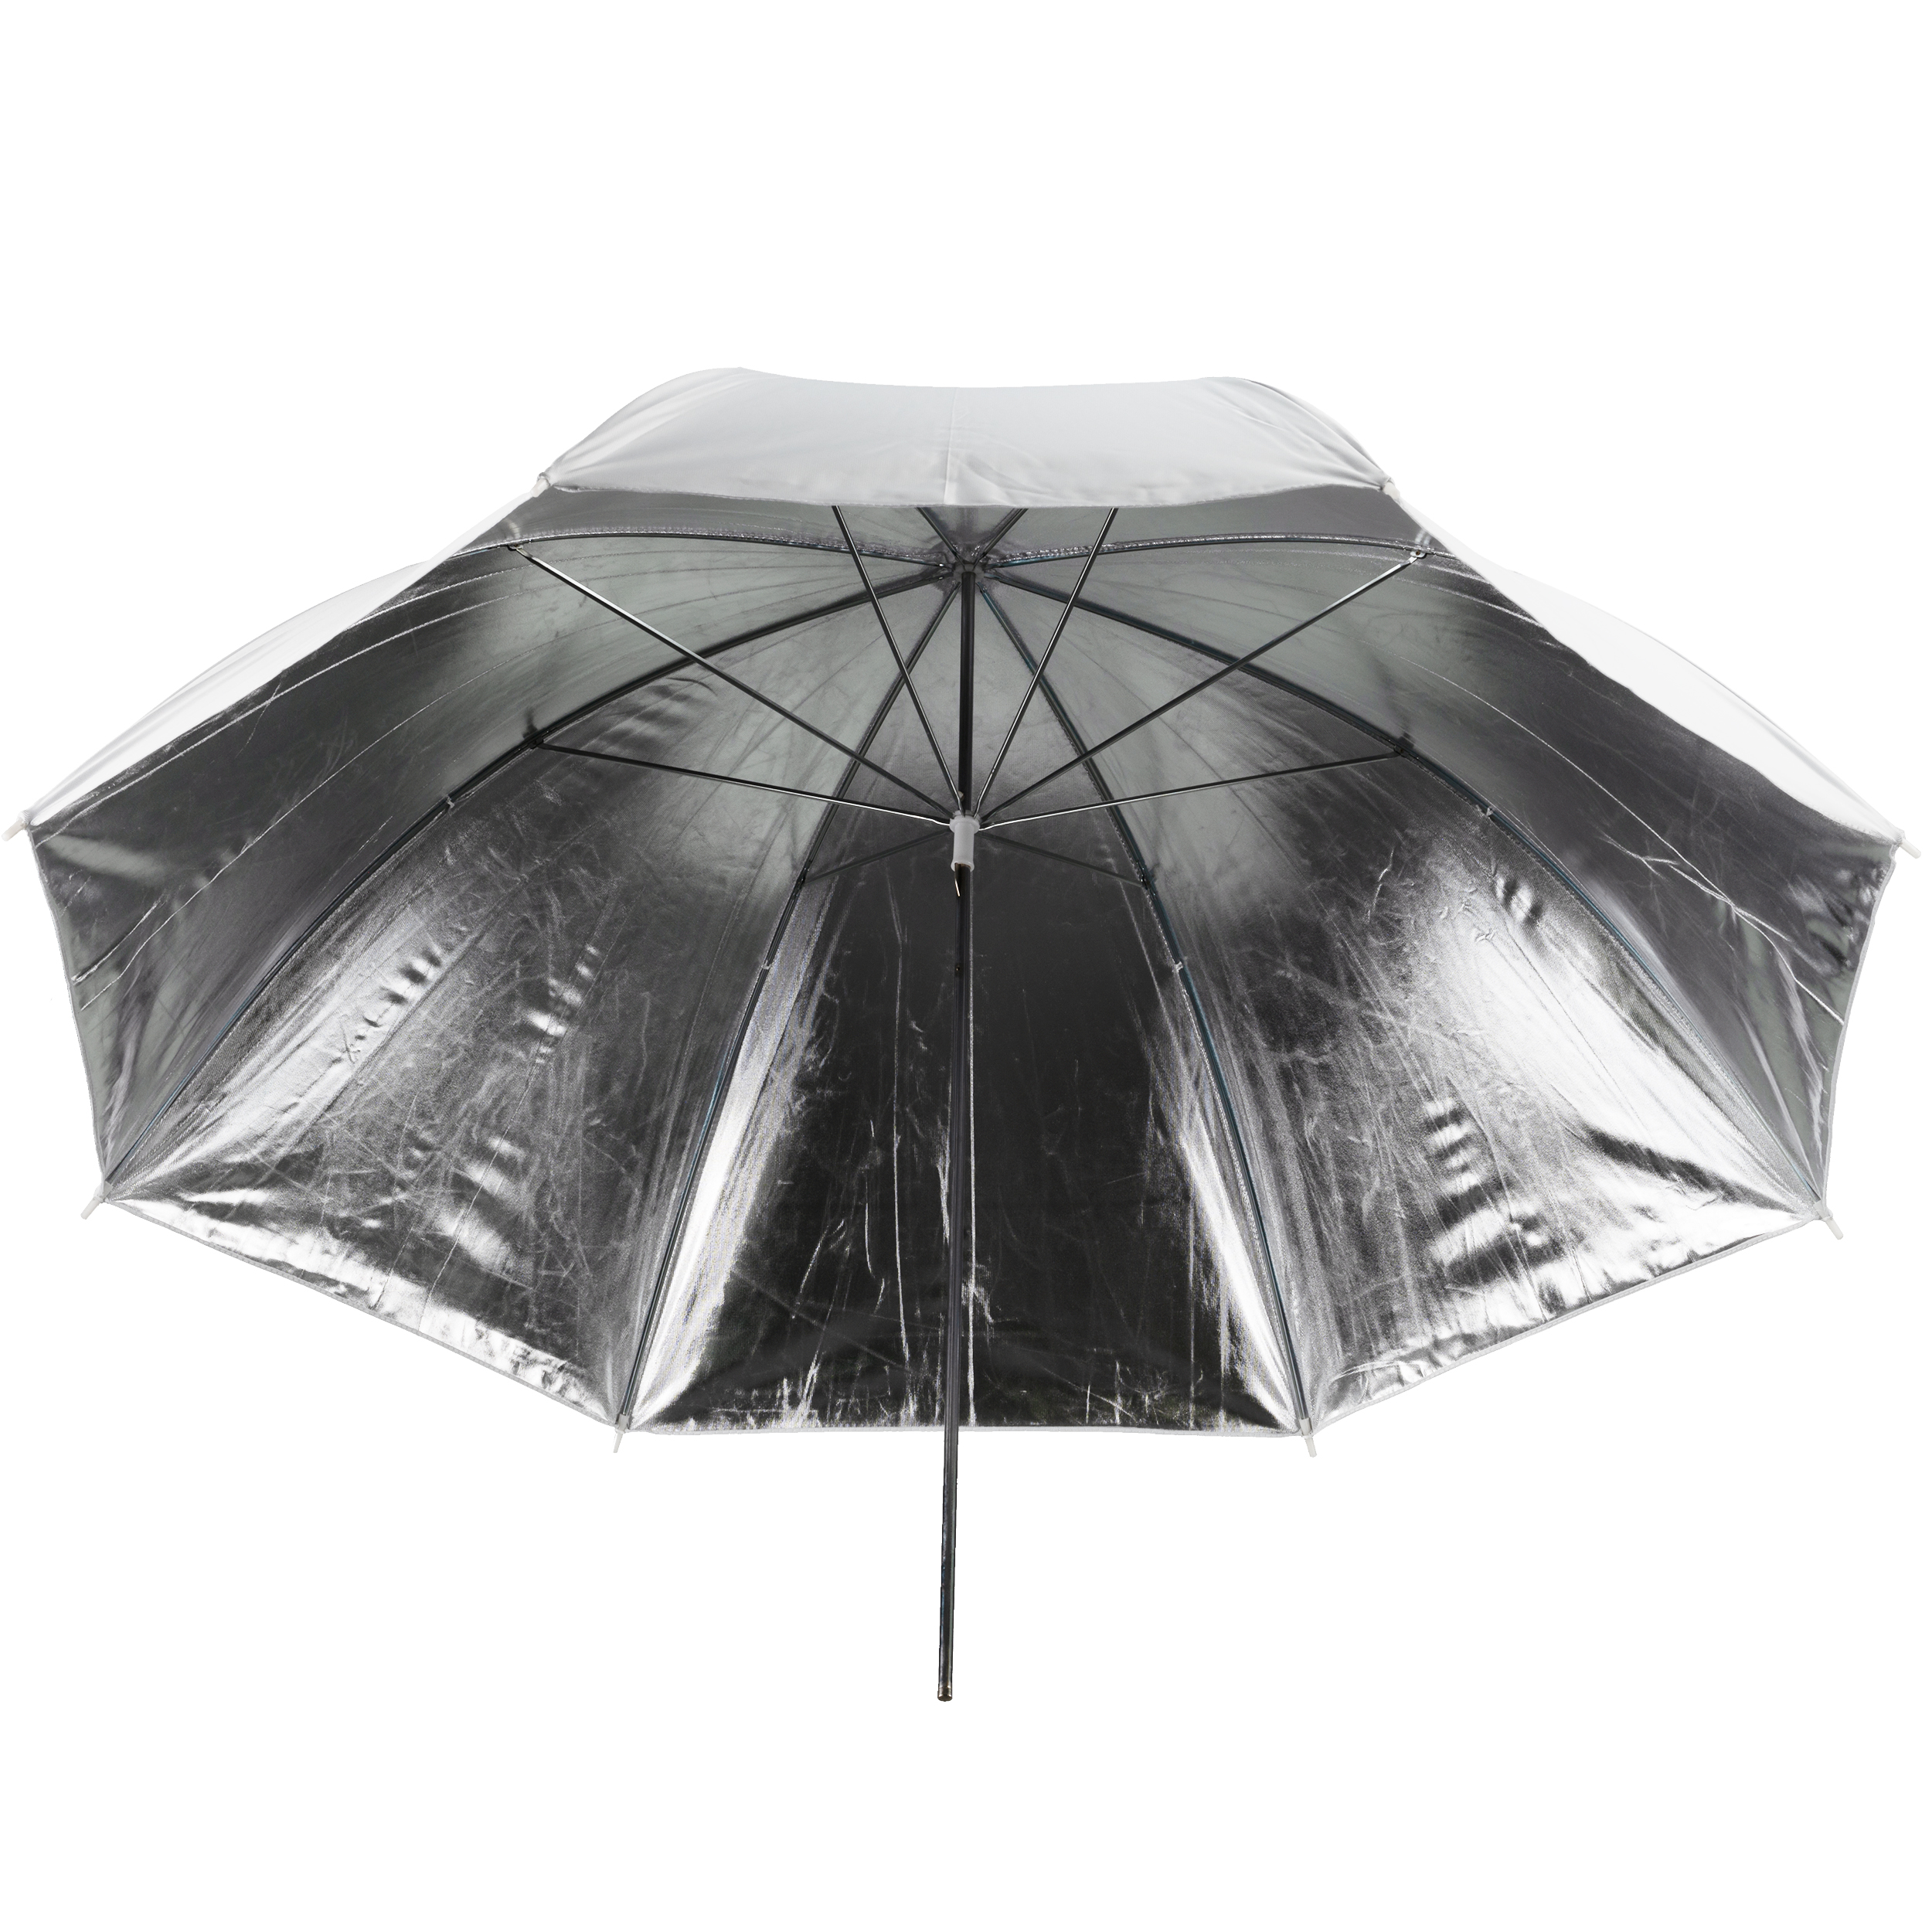 BRESSER SM-04 Reflective Umbrella white/silver 109 cm